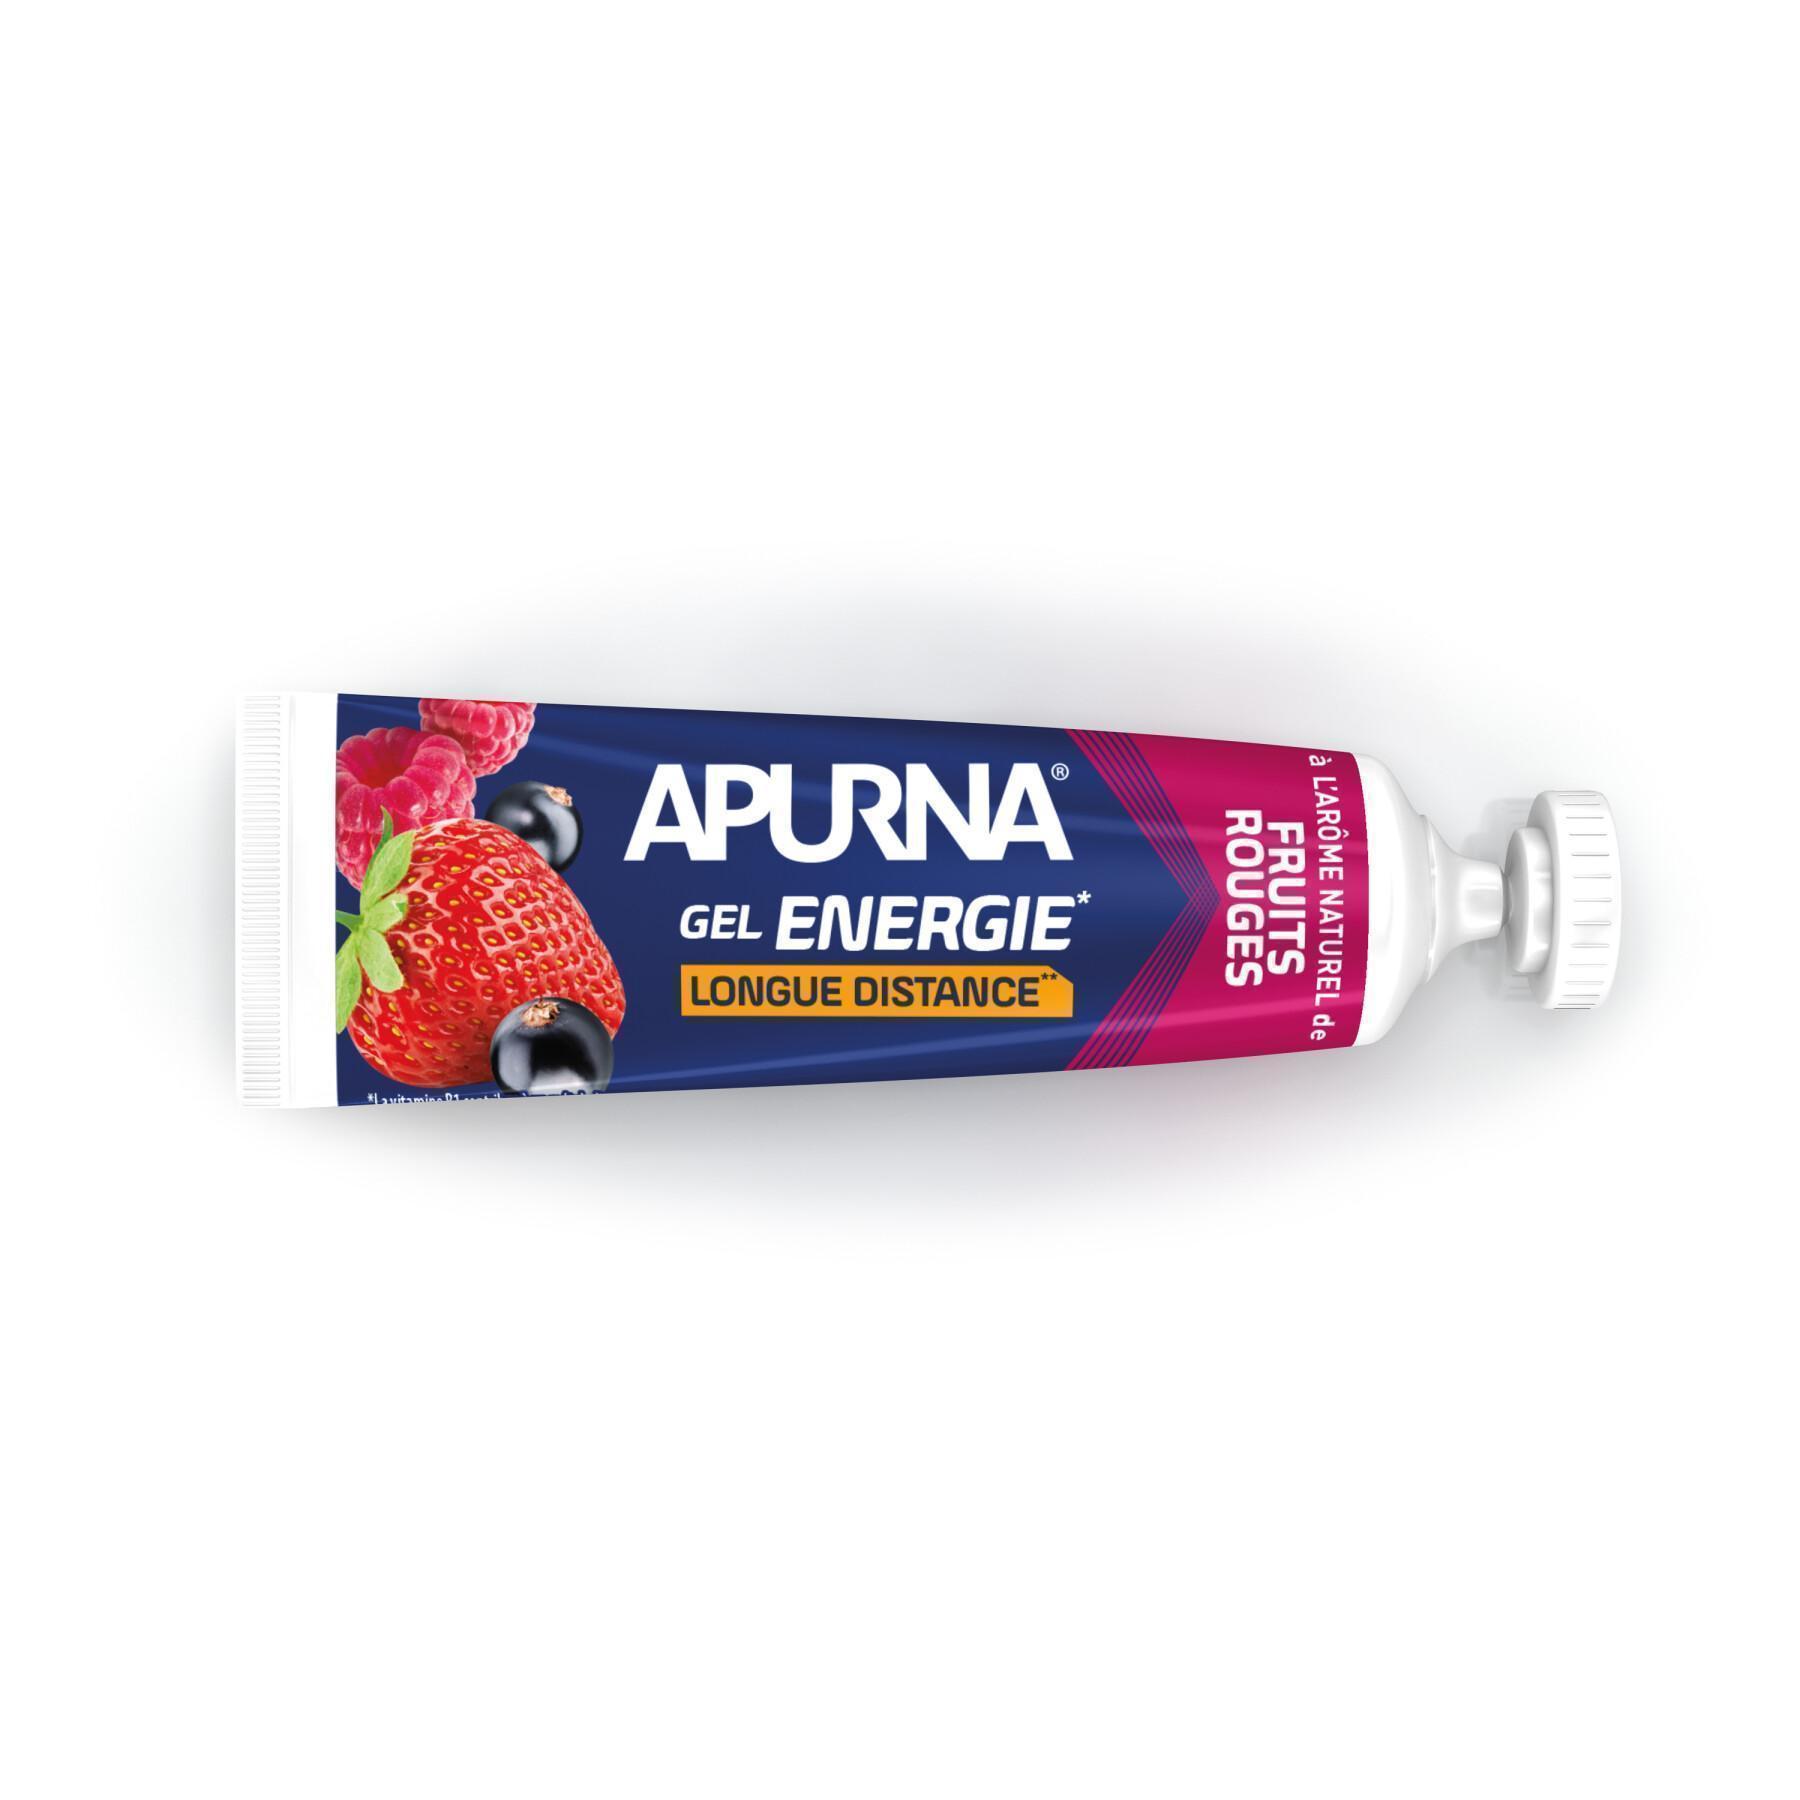 Batch of 25 gels Apurna Energie fruits rouges - 35g 